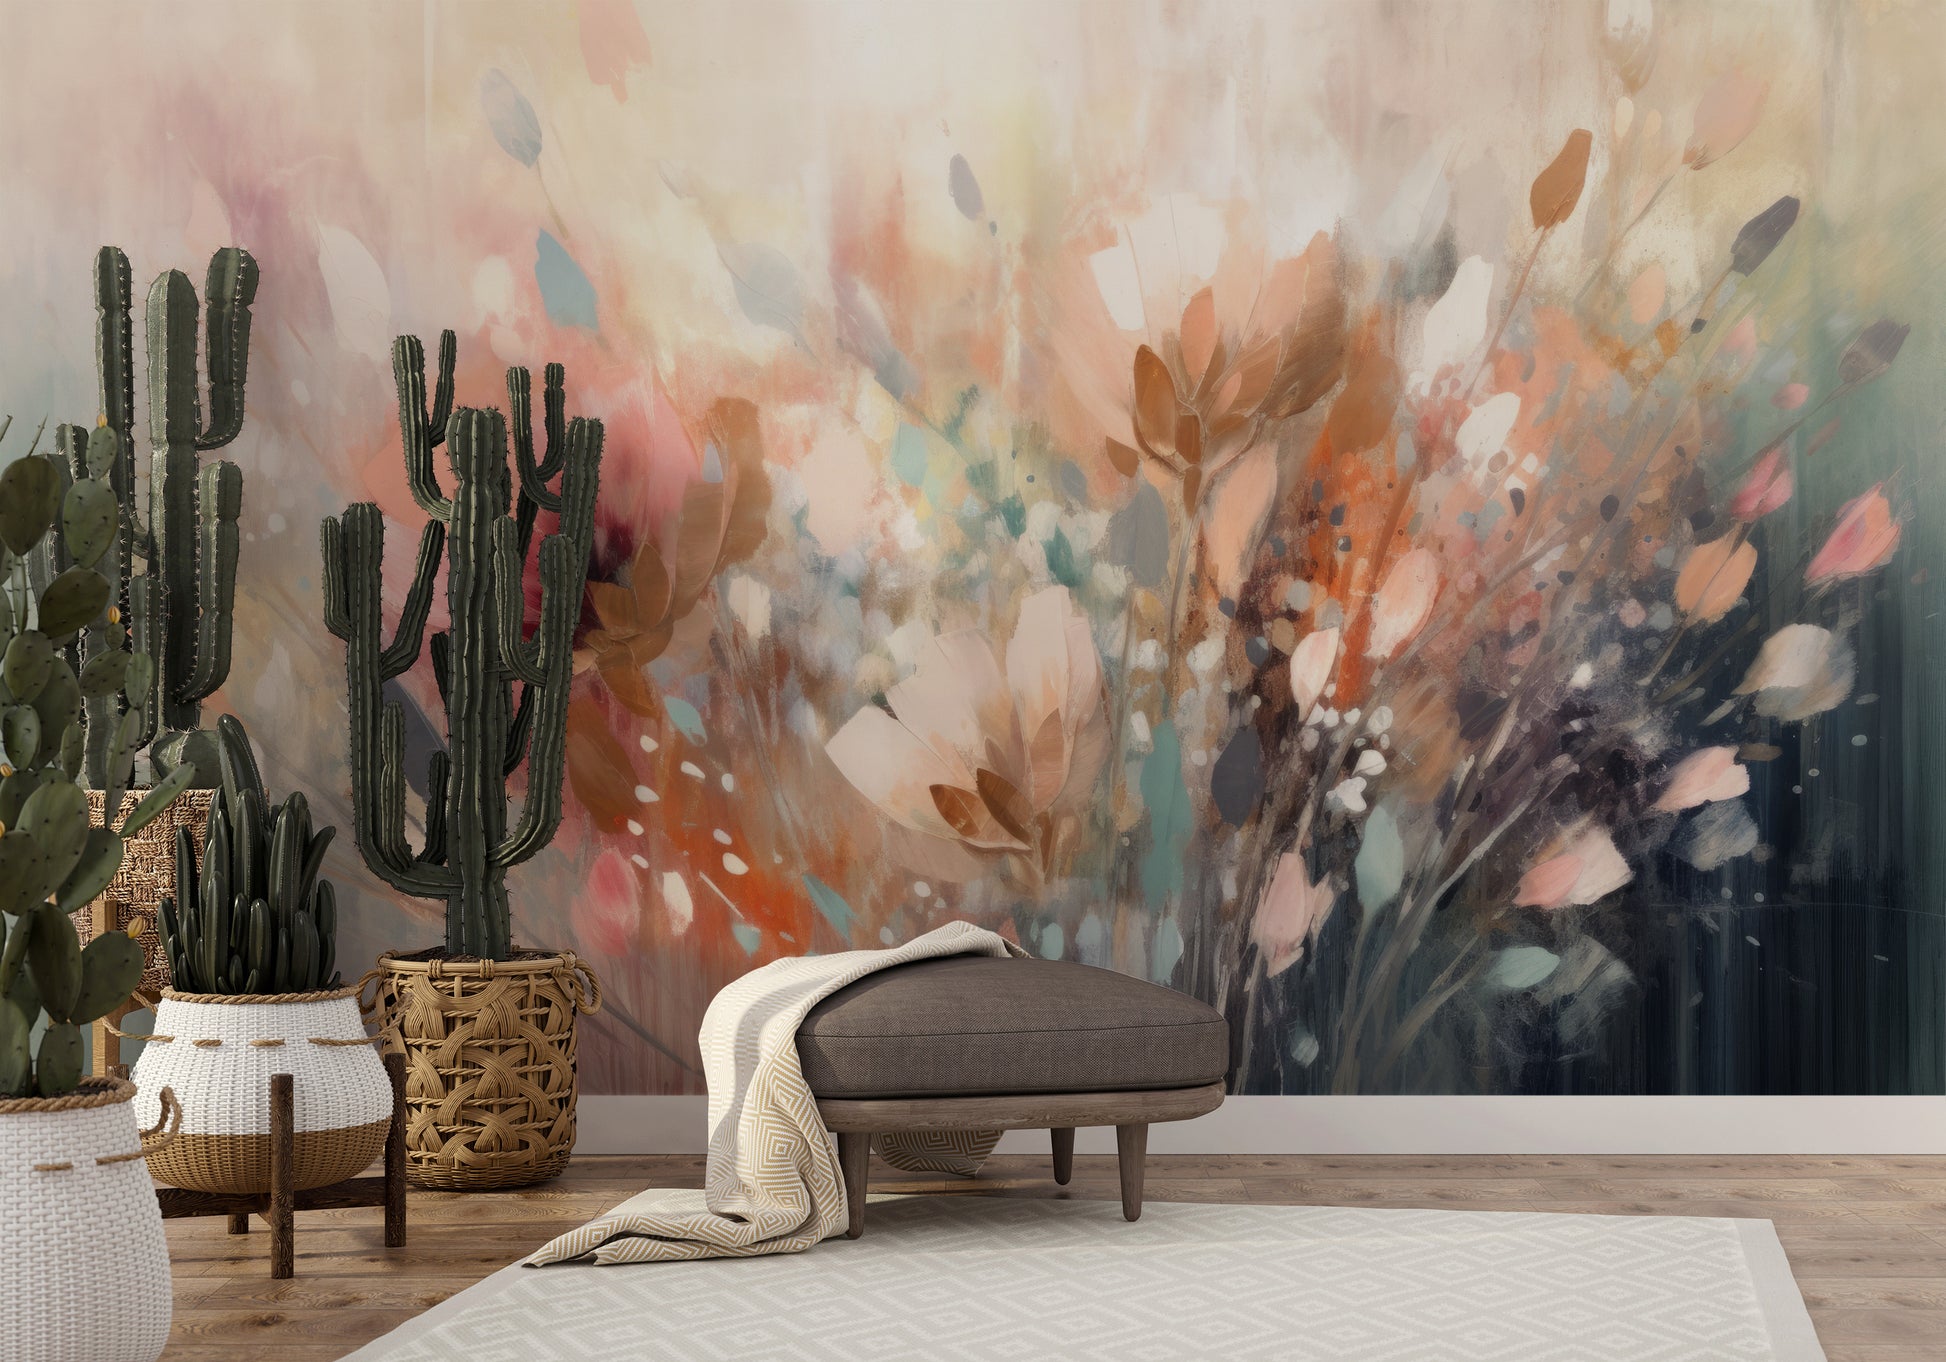 Wzór fototapety malowanej o nazwie Dreamy Floral Impression pokazanej w aranżacji wnętrza.